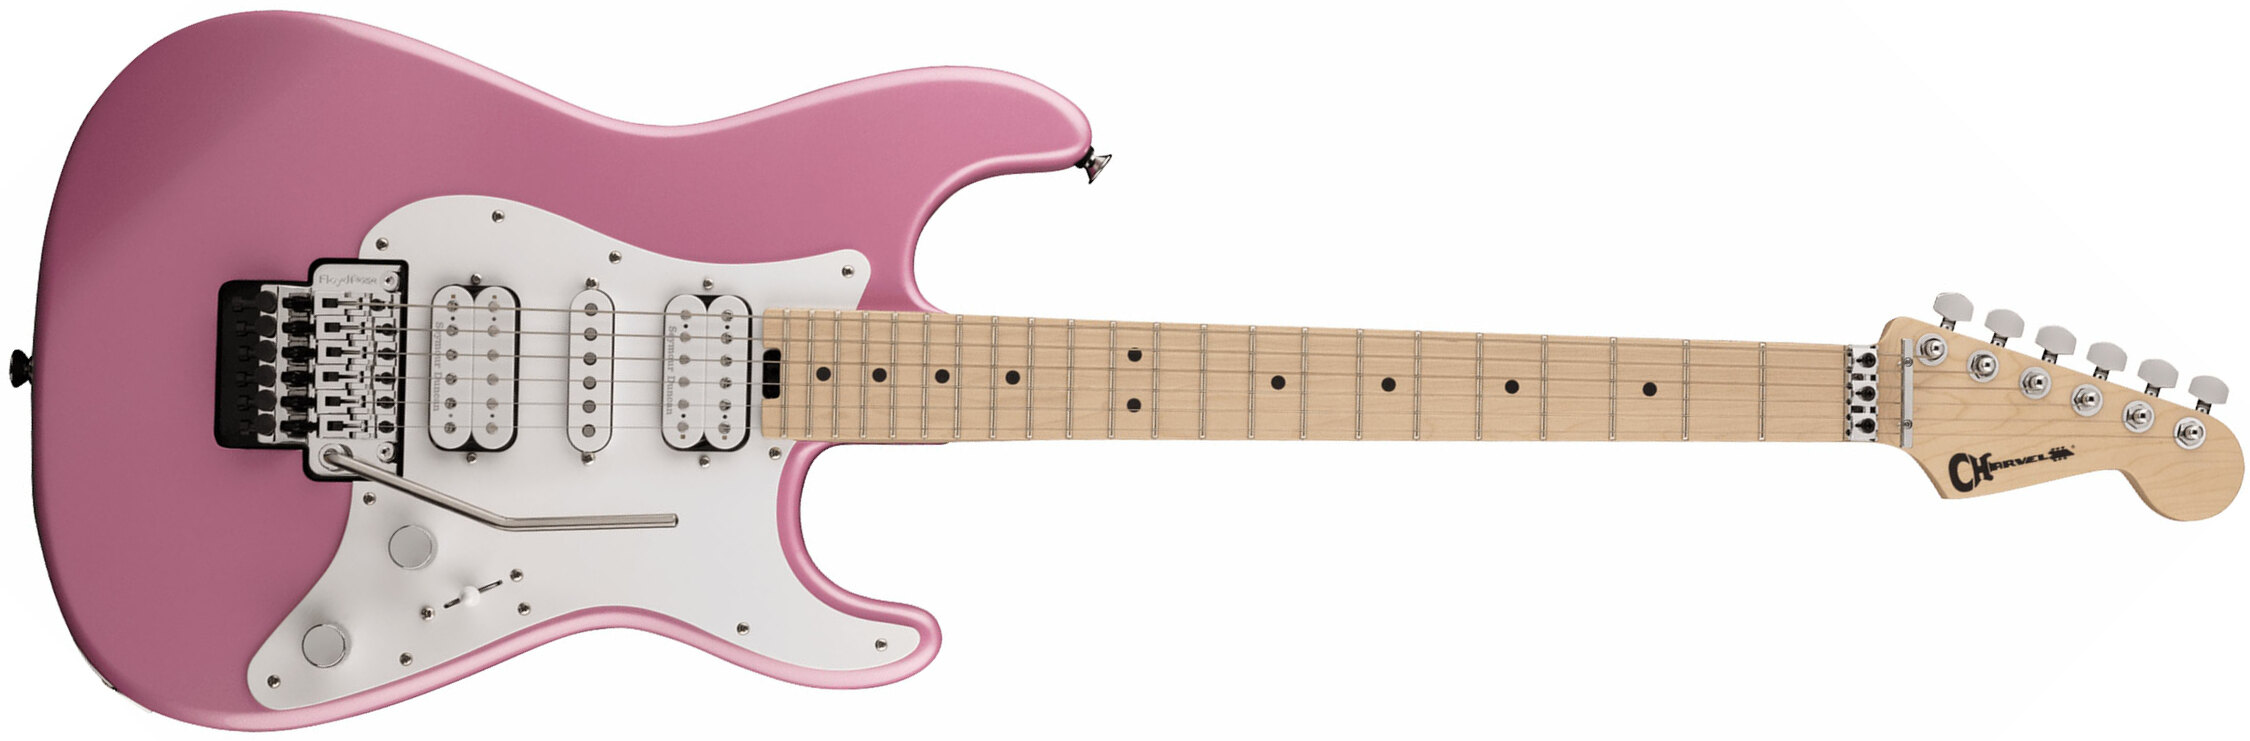 Charvel So-cal Style 1 Hsh Fr M Pro-mod Seymour Duncan Mn - Platinum Pink - Guitarra eléctrica con forma de str. - Main picture